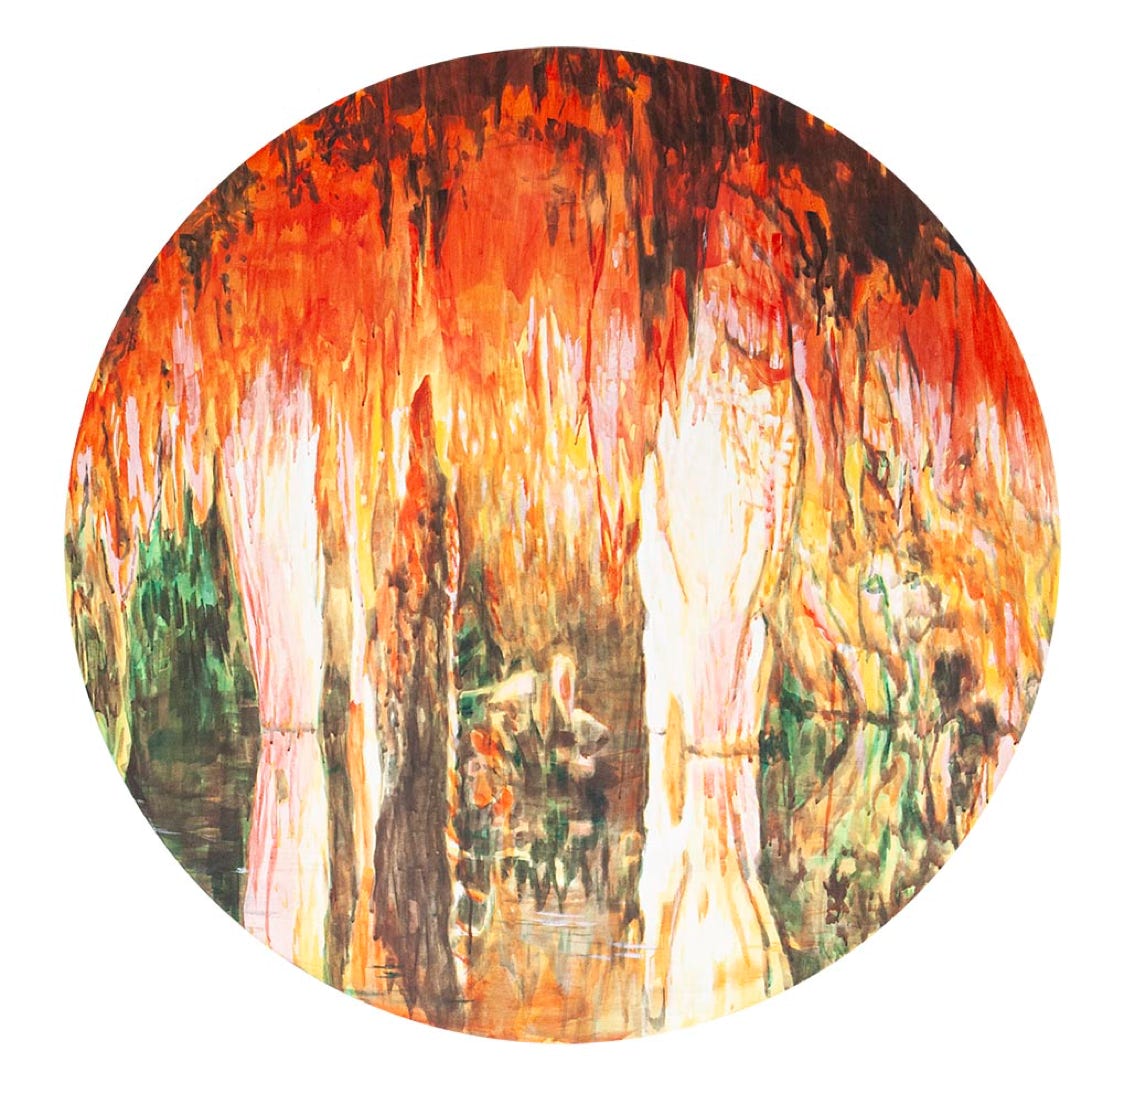 Walts Cave - 2010 - vinylpaint on canvas - diameter 118 cm